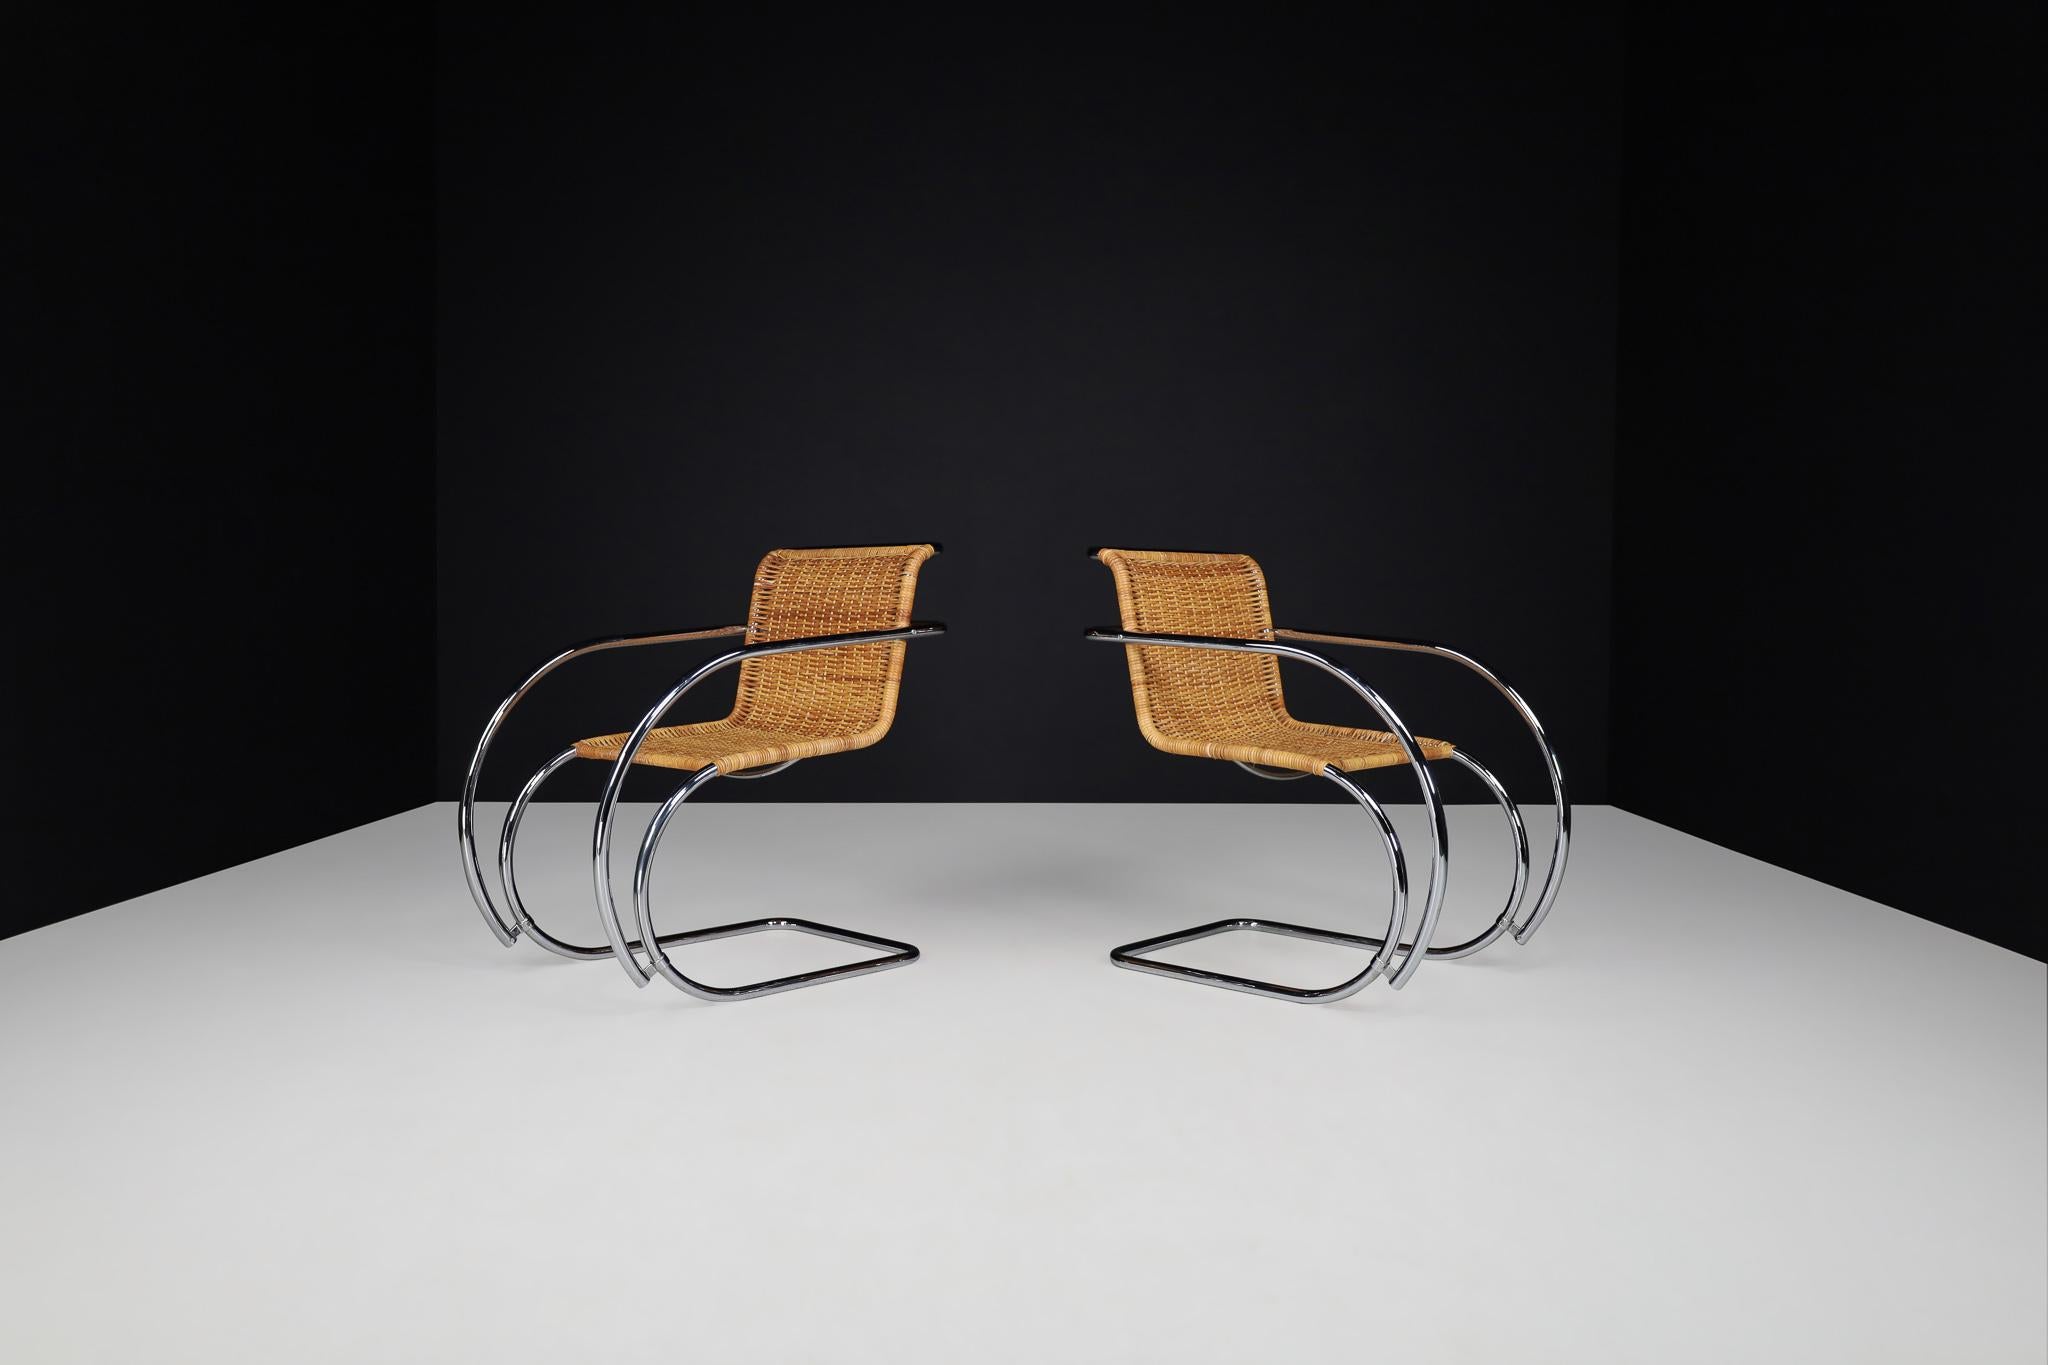 Wunderschöner originaler Mies Van der rohe M20 Lounge Chair aus Korbgeflecht und Chrom. Das Geflecht ist in einem tollen Vintage-Zustand. Das Gestell aus verchromtem Stahlrohr hat einen ultramodernen Stil und kontrastiert mit dem Geflechtsitz, der